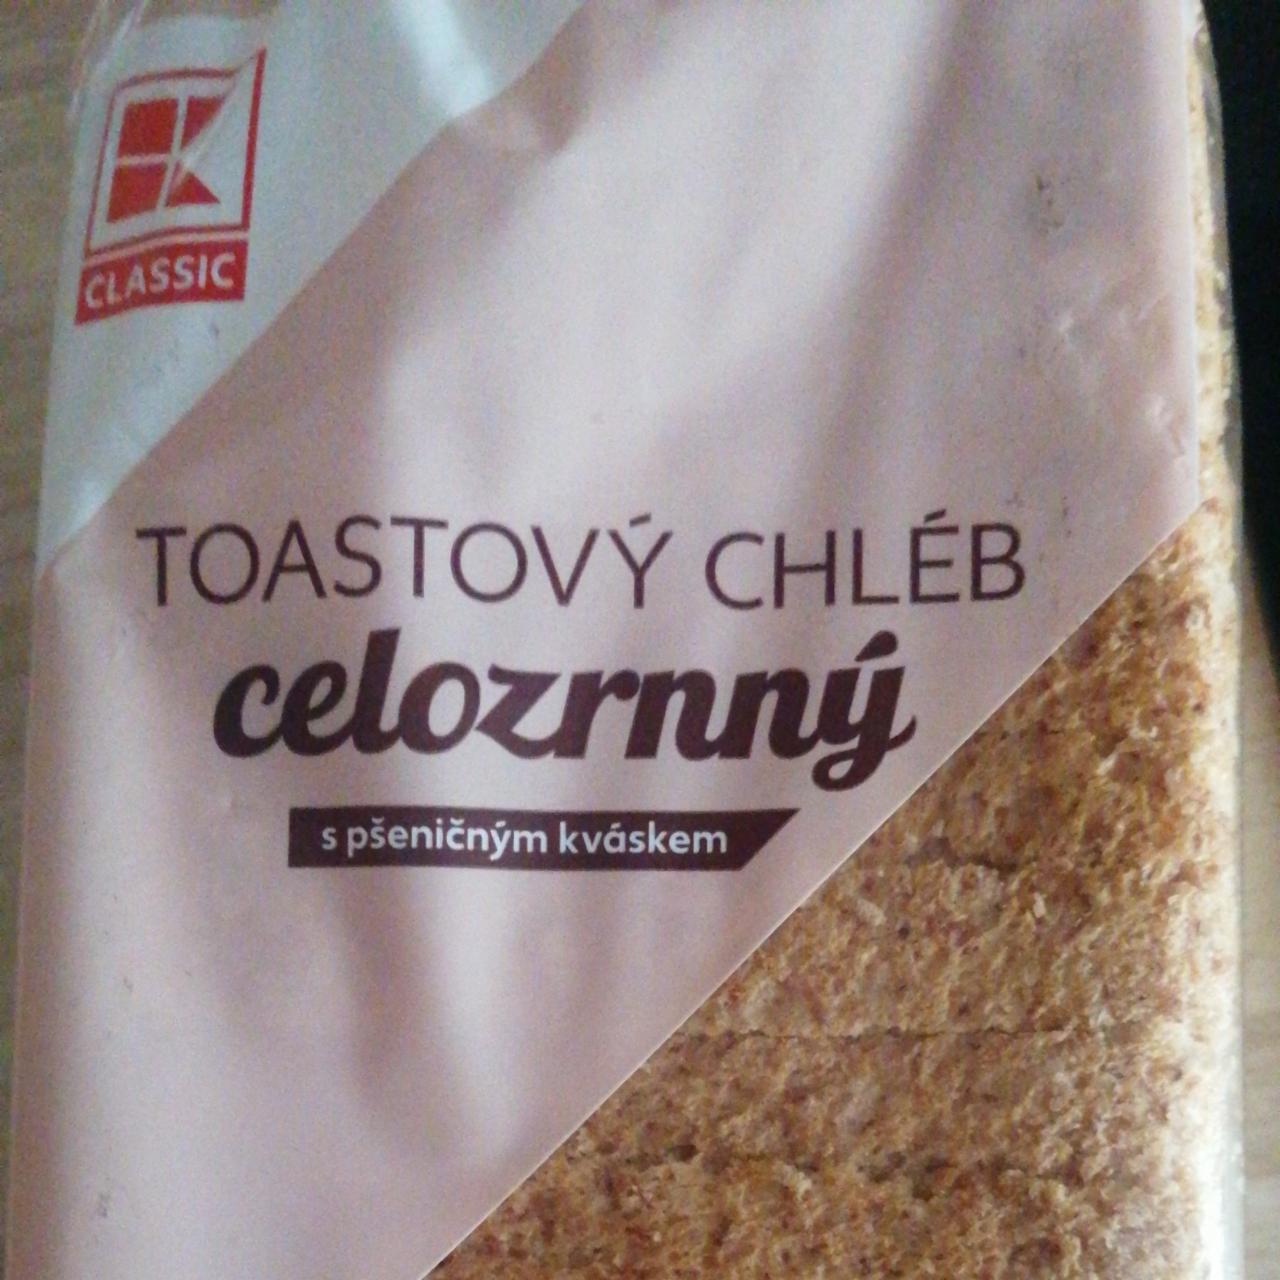 Fotografie - Toastový chléb celozrnný s pšeničným kváskem K-Classic